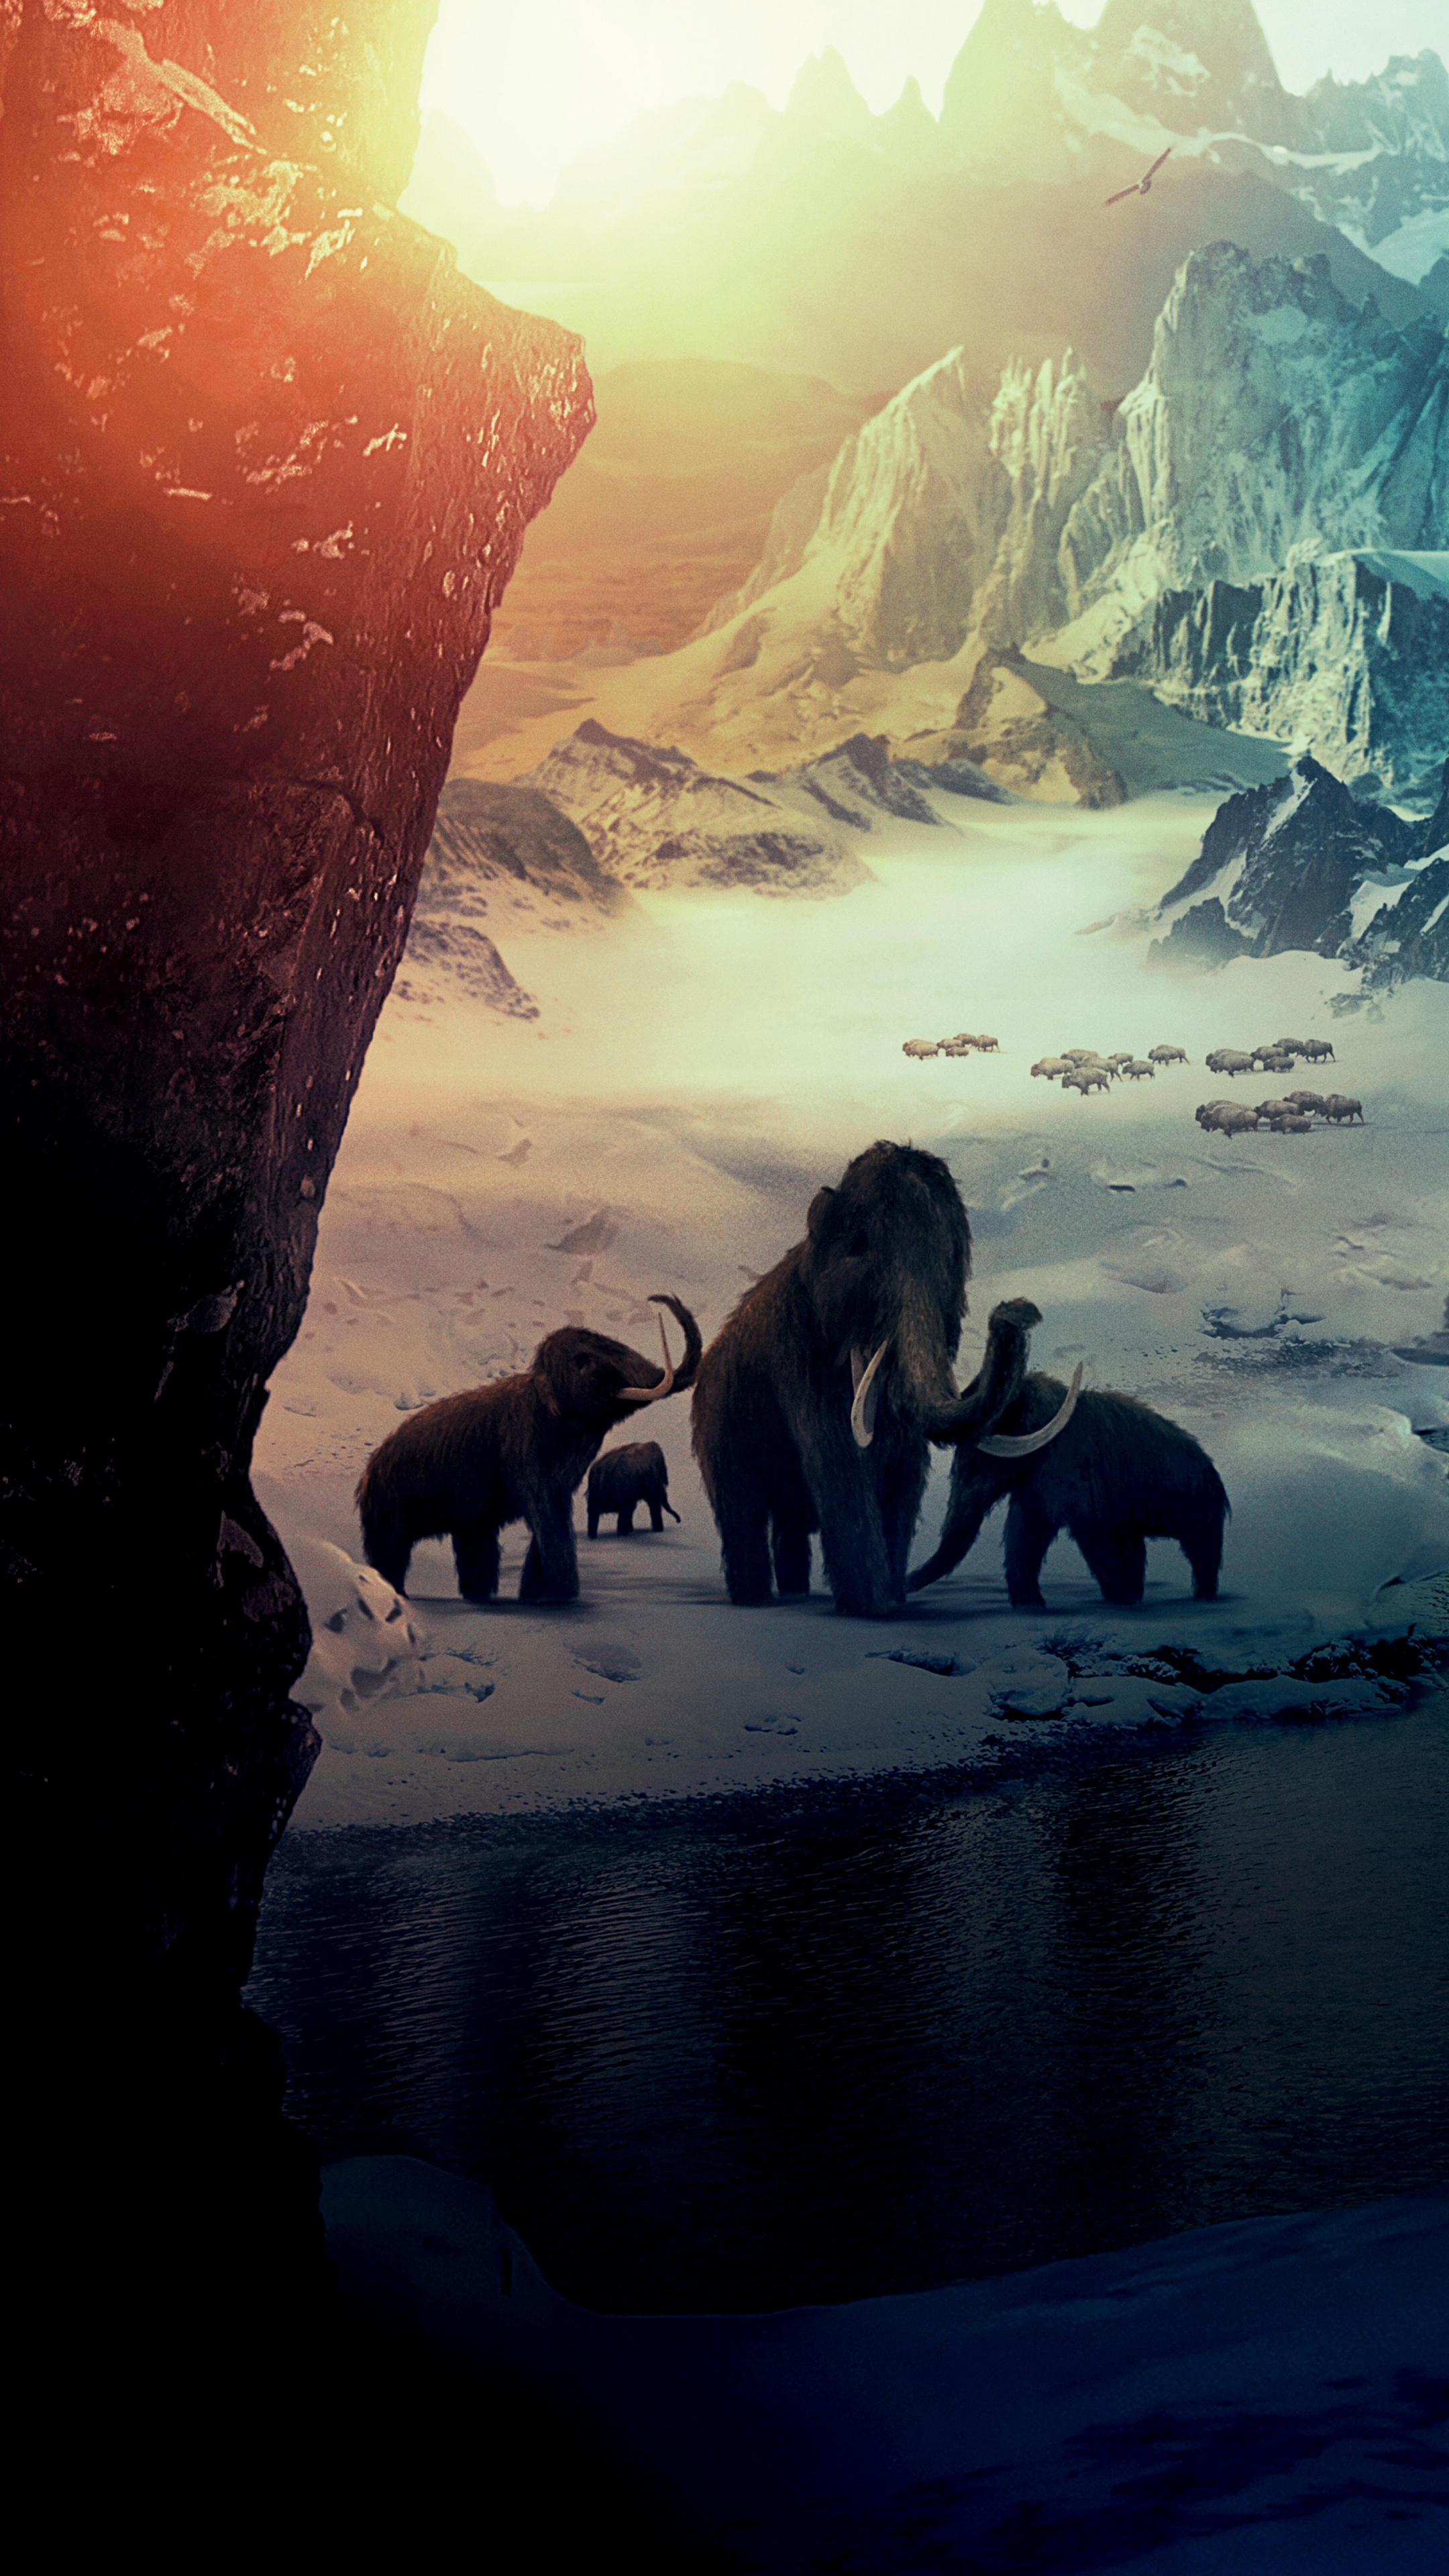 Download mammoths, Big elephants ice age, Snow mountains fantasy, Sony Xperia Z5 Premium, 2160x3840 4K Handy